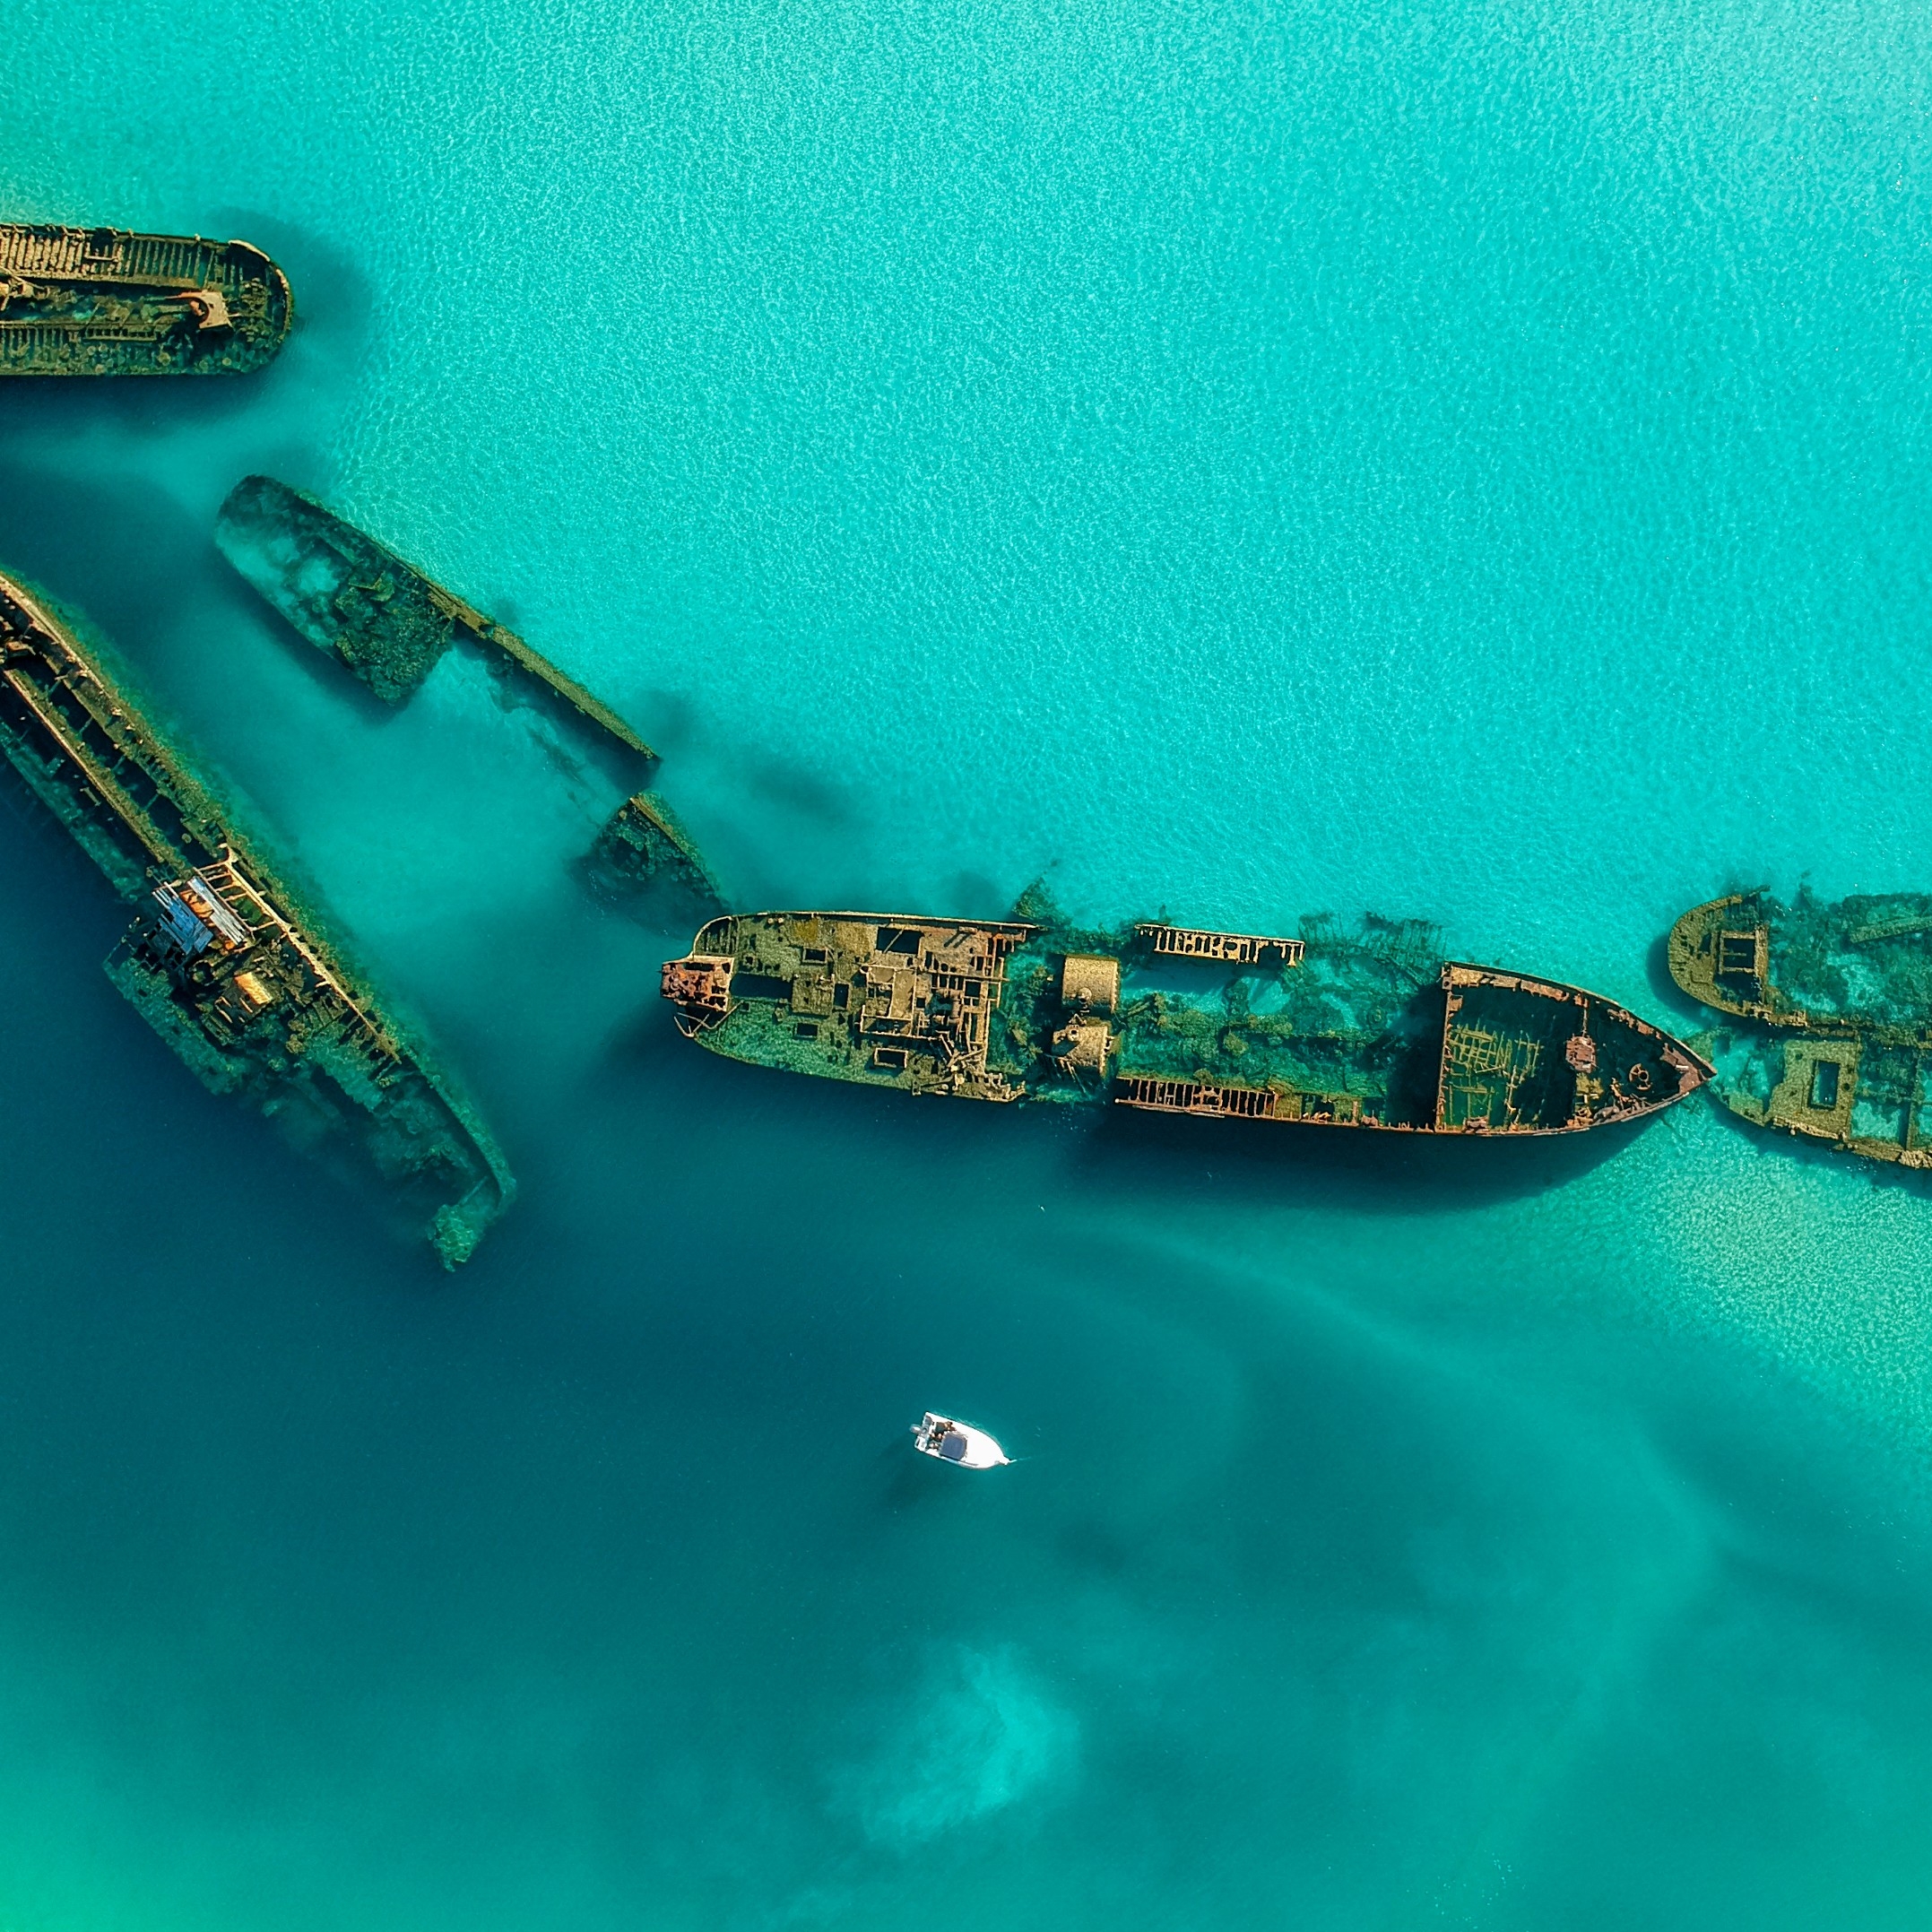 昆士兰州，摩顿岛的天阁露玛沉船残骸 © 澳大利亚旅游局版权所有